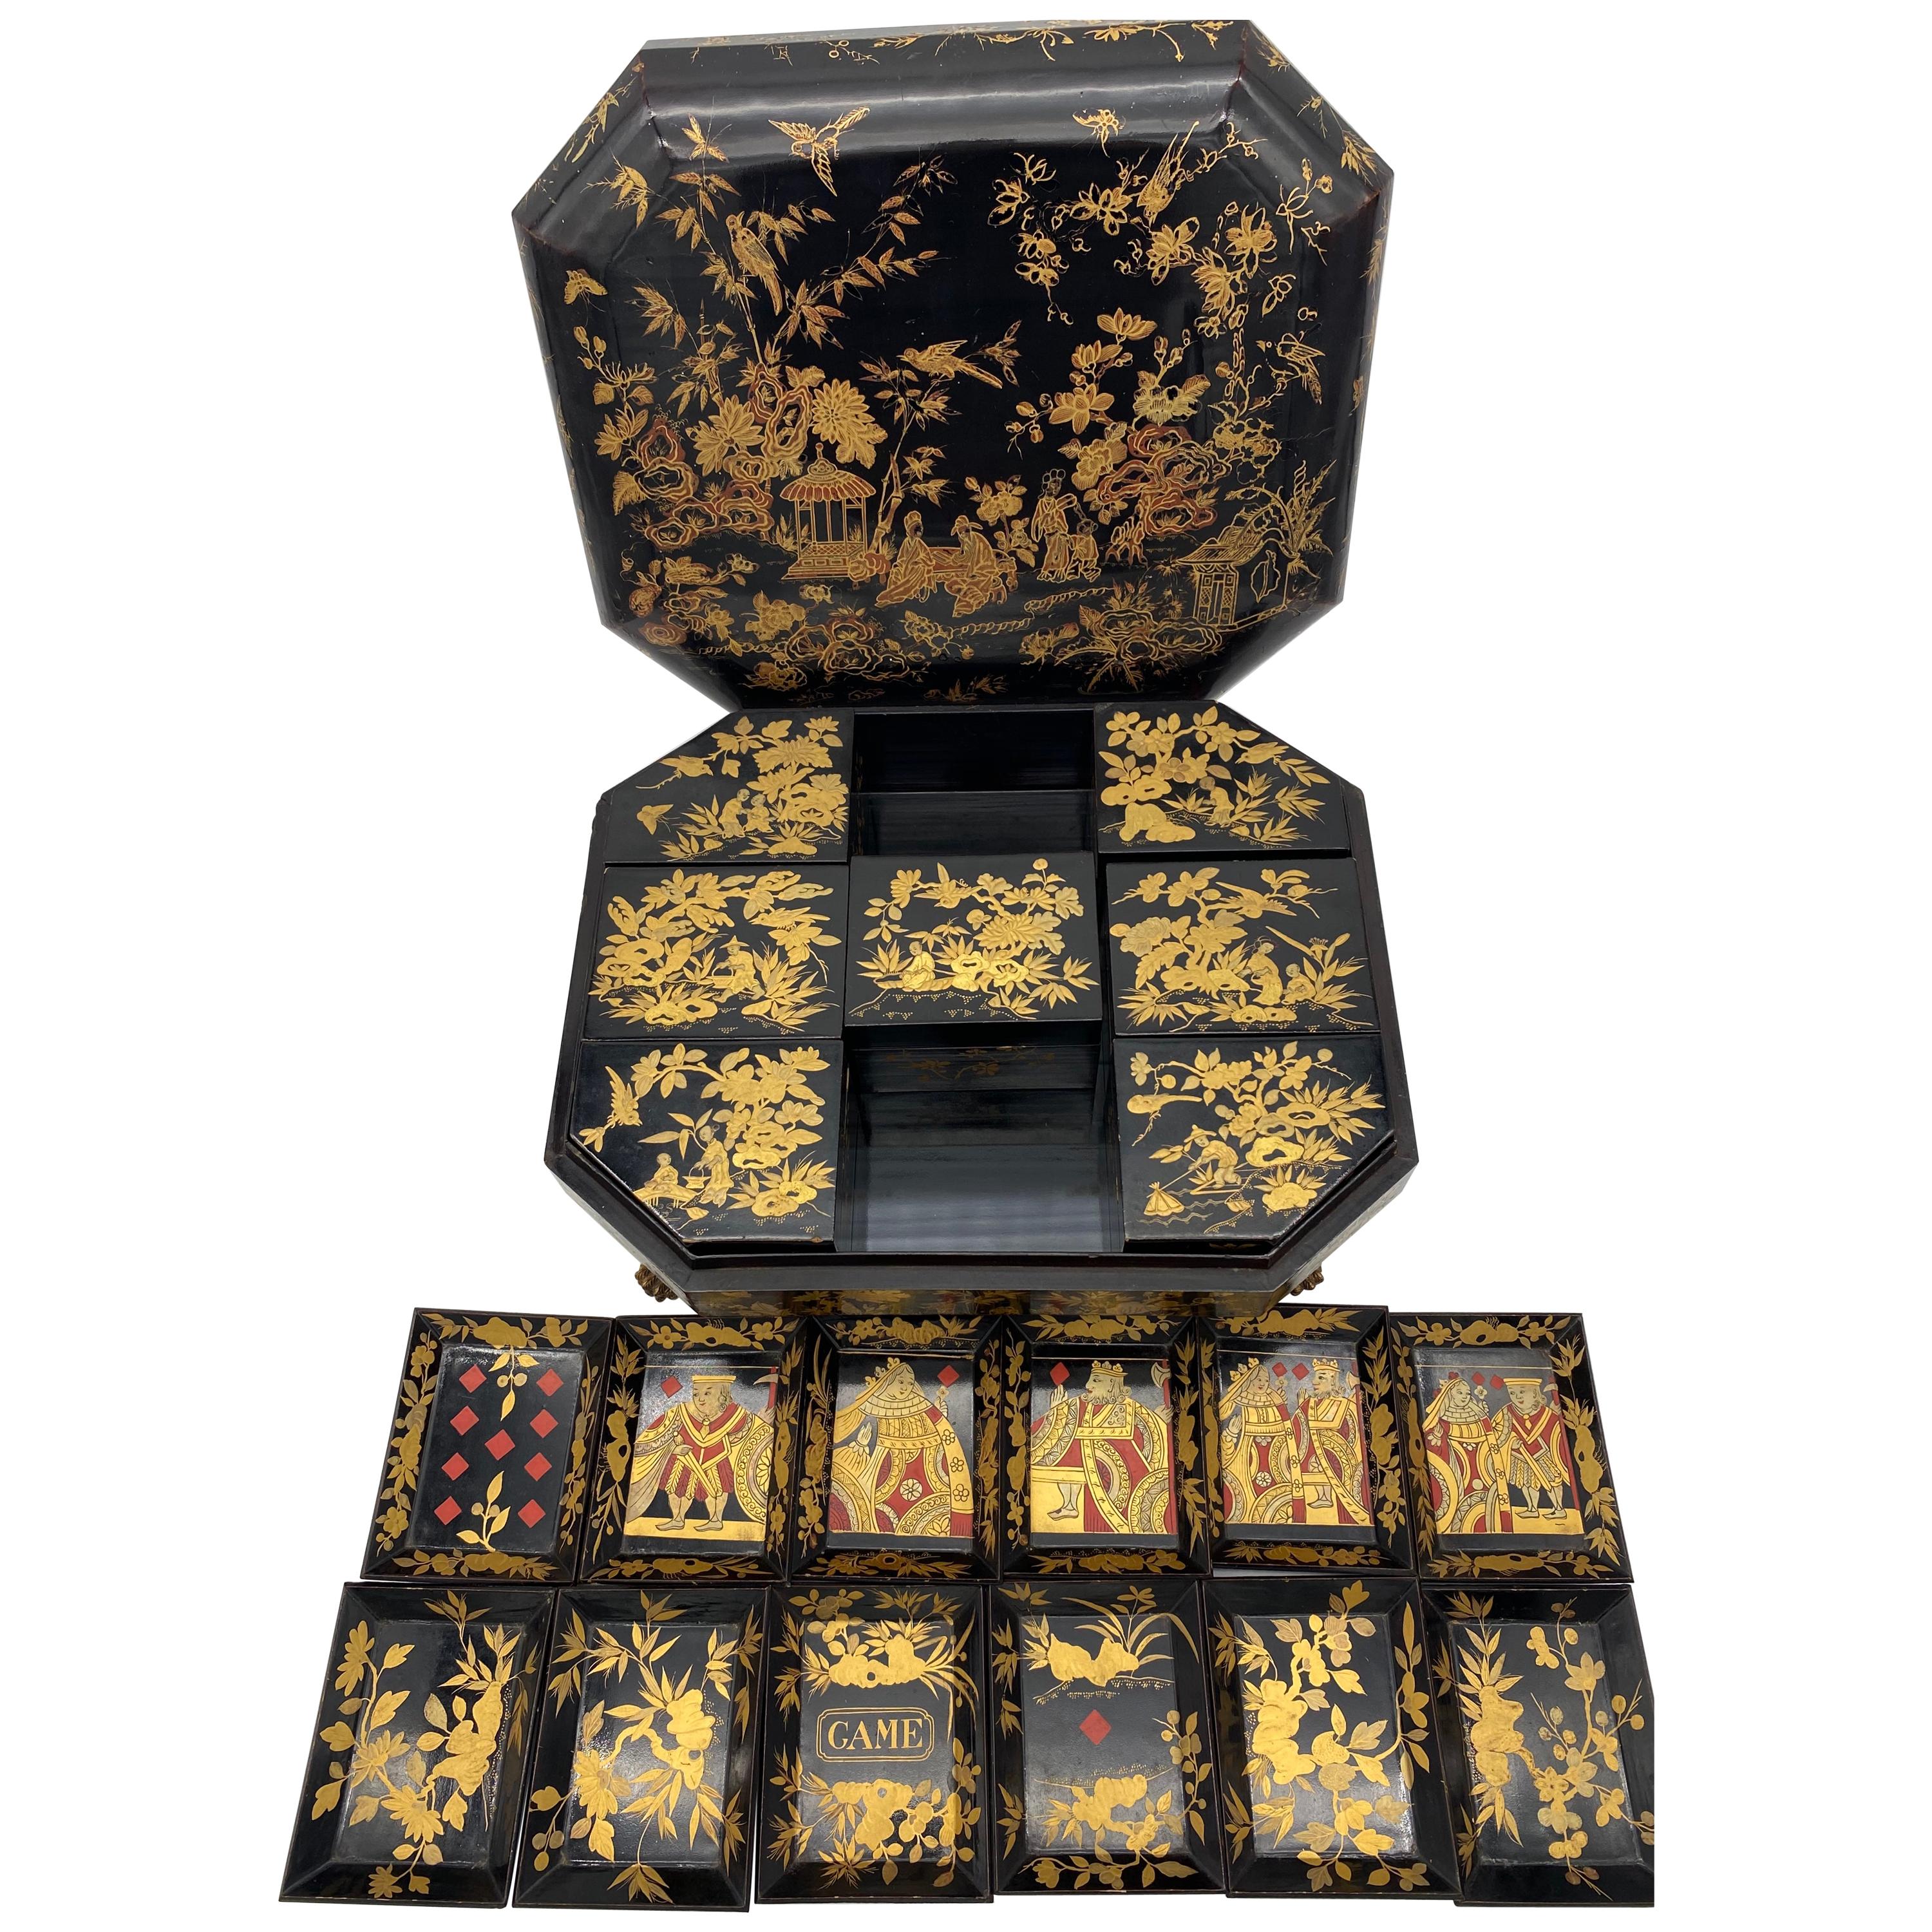 Antike chinesische Export-Spielkasten aus lackiertem Lack aus dem 18. Jahrhundert